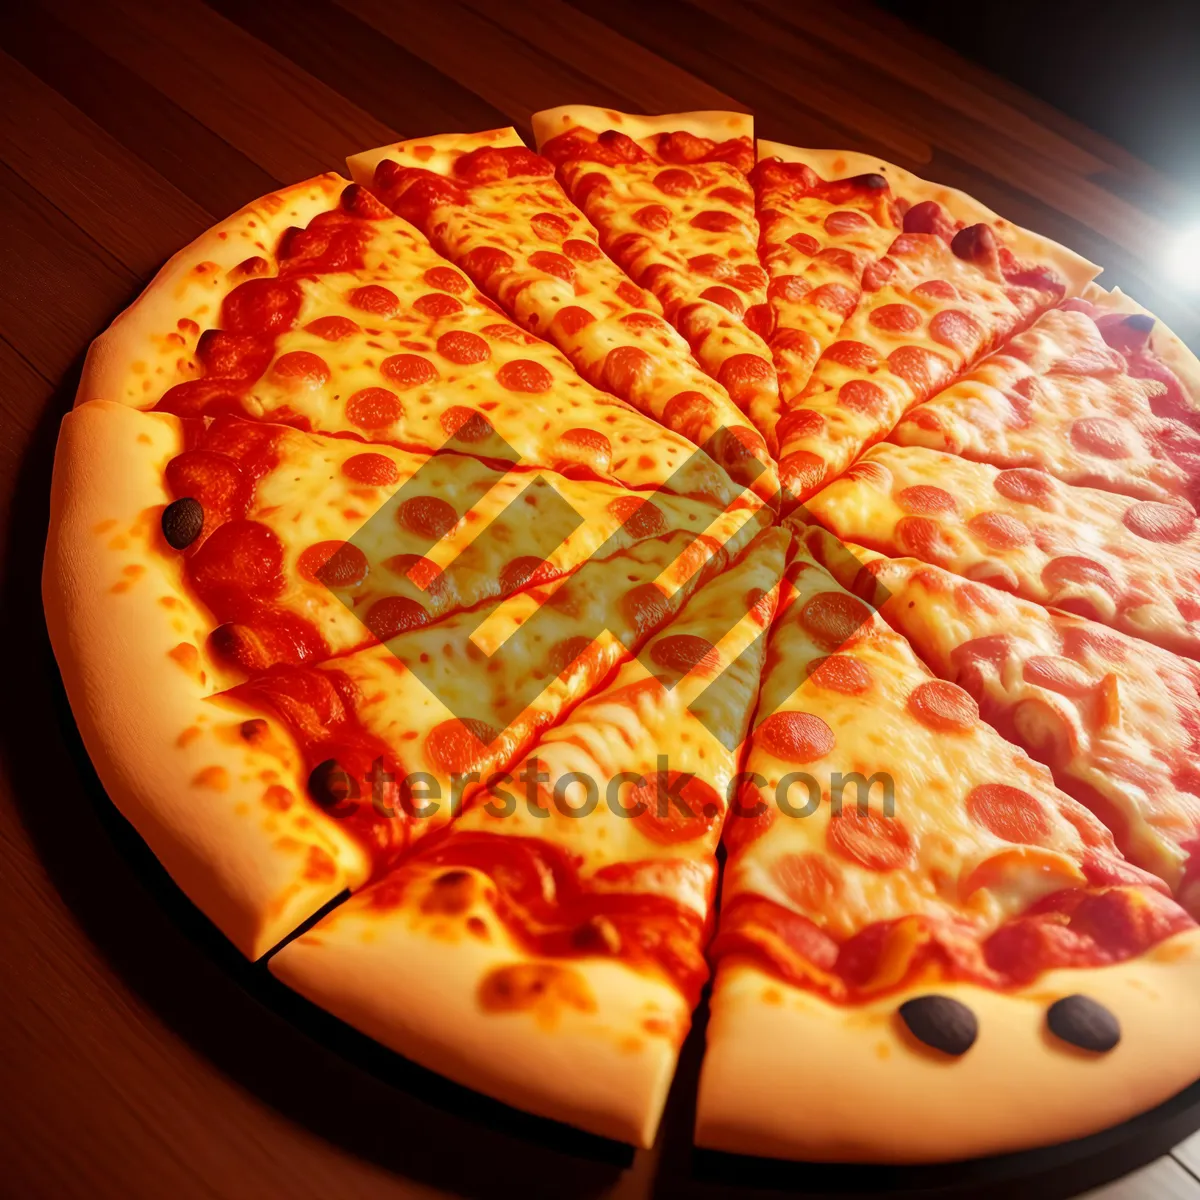 Picture of Delicious Pizza slice with pepperoni and mozzarella